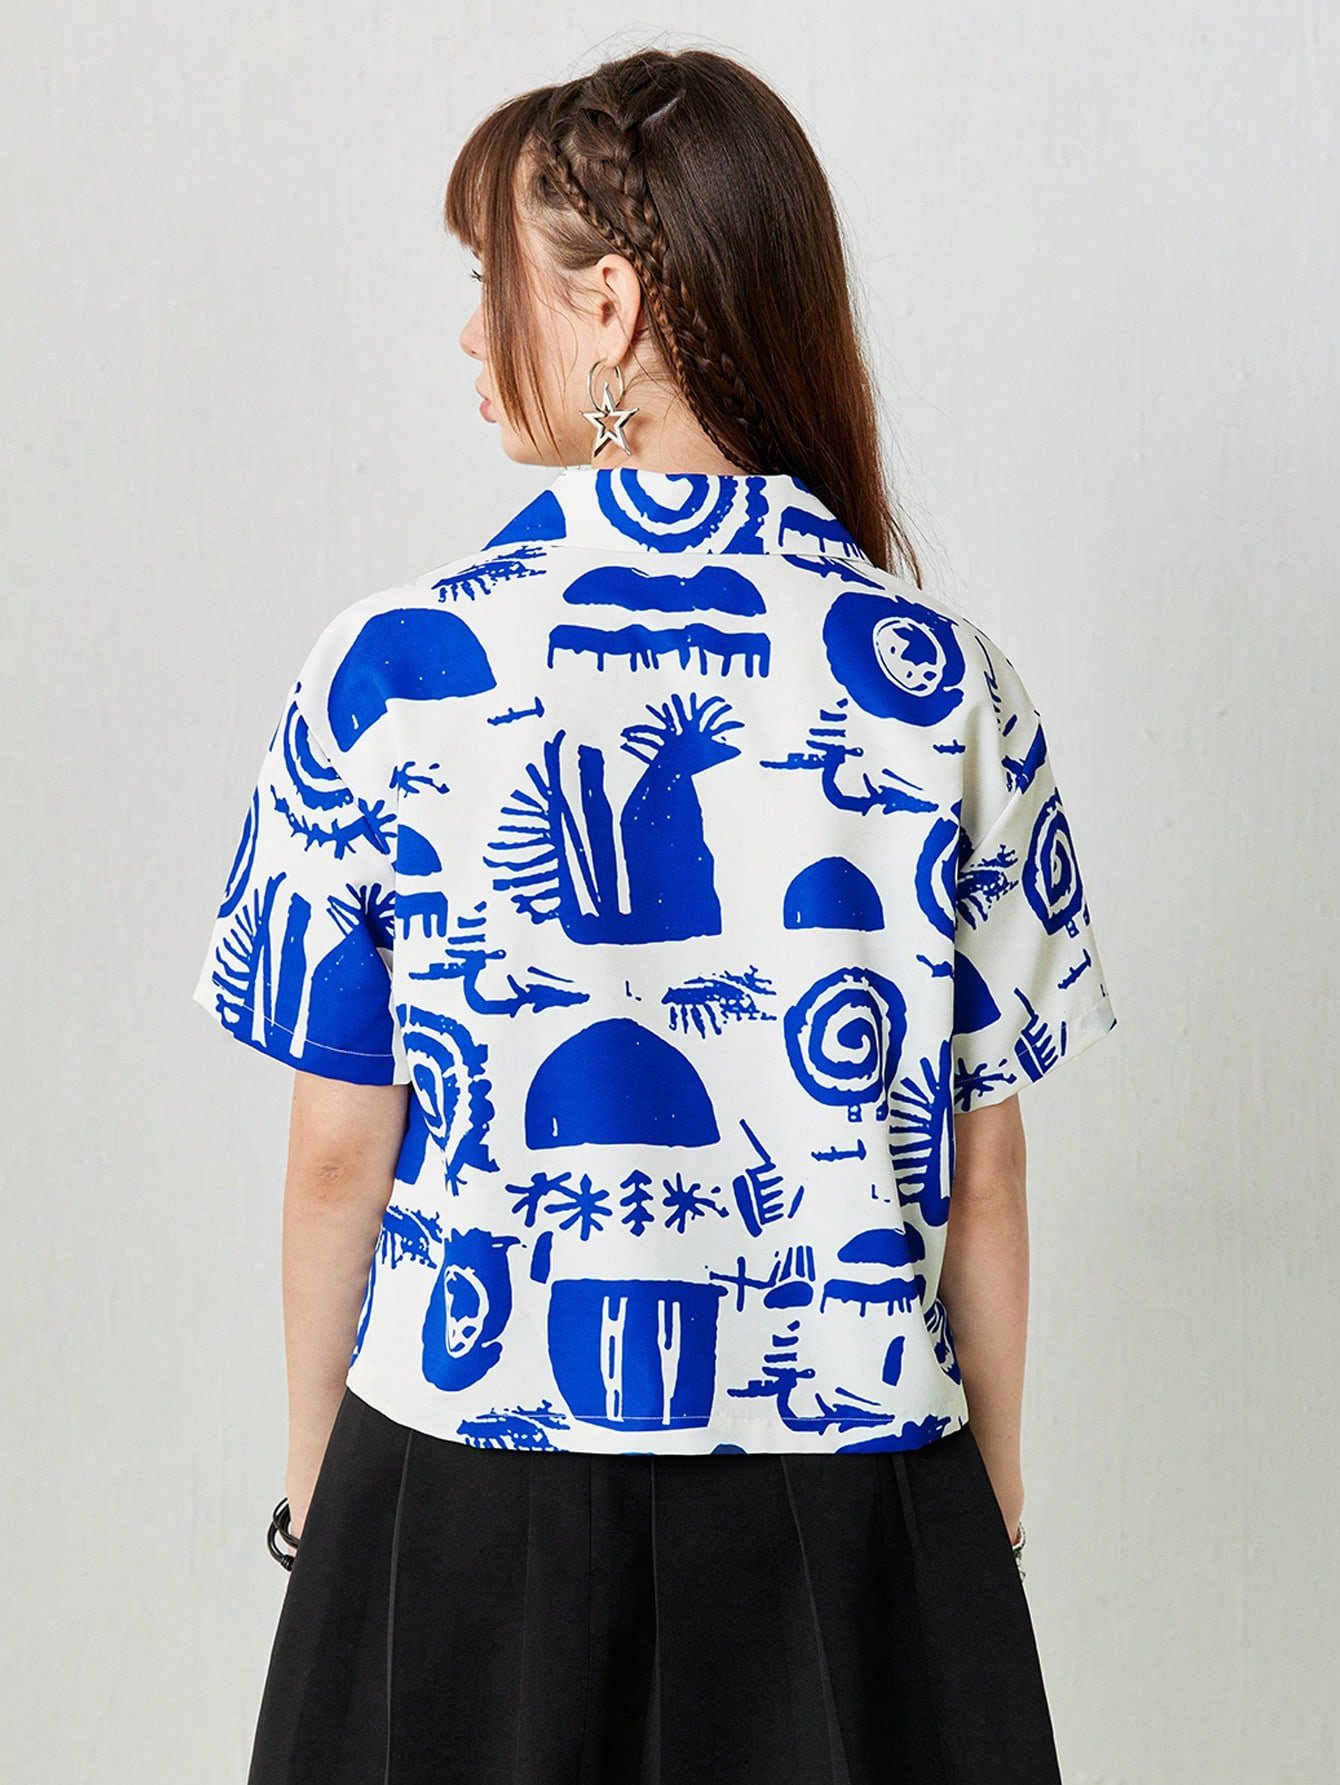 女性の夏用カジュアルカラフルなランダムシンプルプリントの半袖シャツ